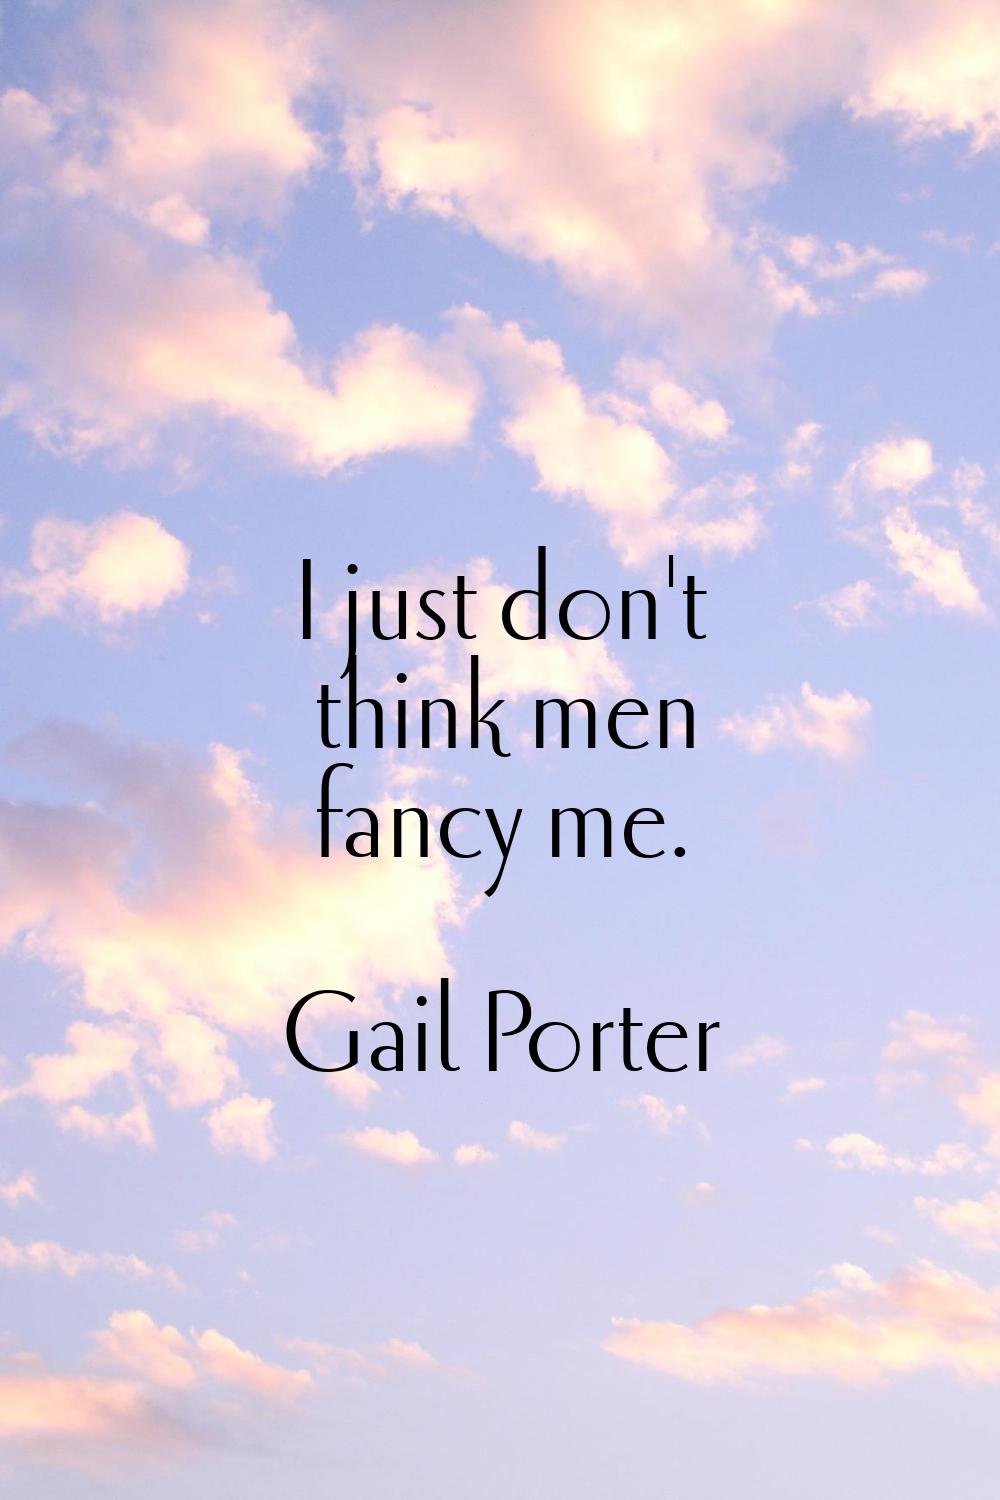 I just don't think men fancy me.